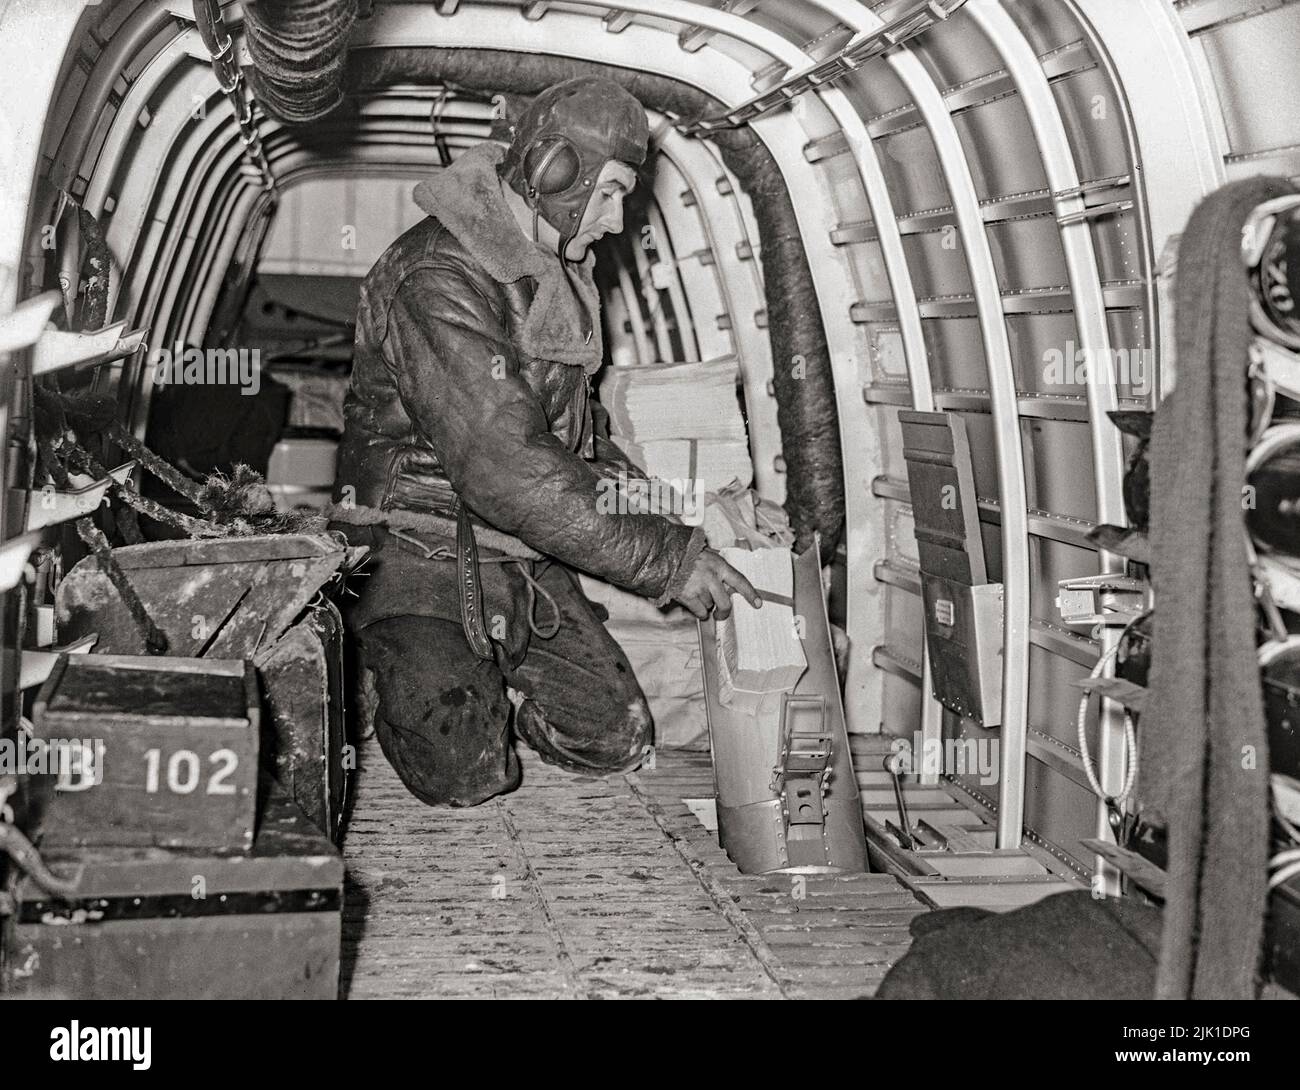 Einer der Luftbesatzungen eines Armstrong Whitworth Whitley Mark V einer Abteilung der RAF-Staffel der 102. Staffel in Villeneuve/Vertus, Frankreich, demonstrierte, wie Propagandaflugzeuge durch die Fackelrutsche auf Flugblatt-Fallbeispielen geworfen wurden. Der Armstrong Whitworth Whitley war einer von drei britischen zweimotorigen mittleren Bombertypen an der Front, die bei Ausbruch des Zweiten Weltkriegs bei der Royal Air Force im Einsatz waren und an dem ersten Bombenangriff der RAF auf deutsches Gebiet teilnahmen. Sie blieb bis zur Einführung von viermotorigen „Schweren“ ein integraler Bestandteil der frühen britischen Bomberoffensive. Stockfoto